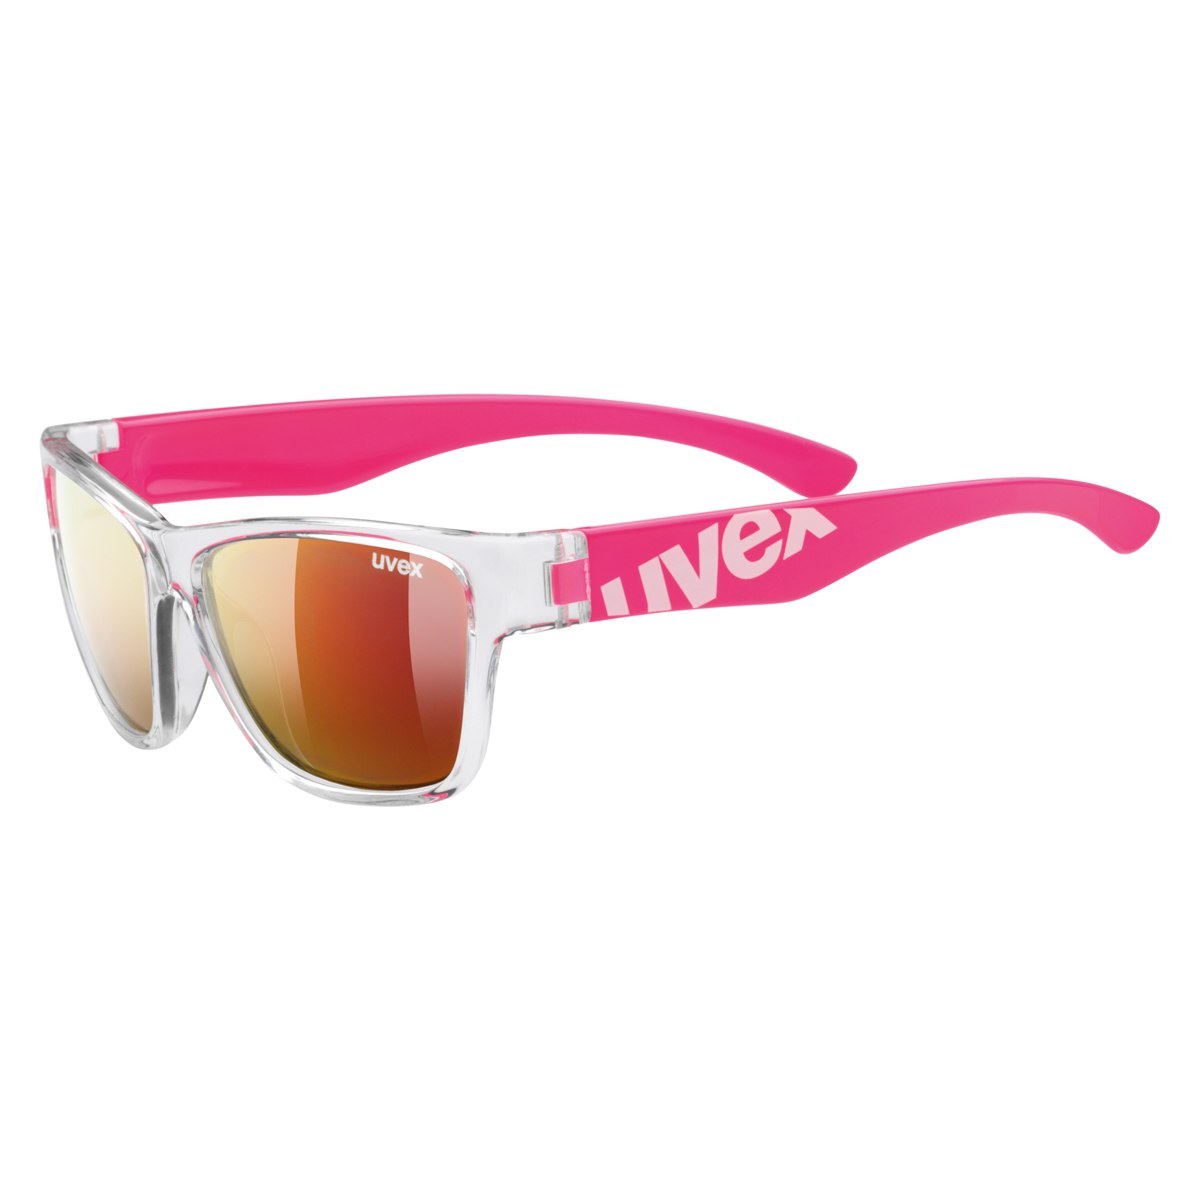 Produktbild von Uvex sportstyle 508 Kinderbrille - clear pink/mirror red